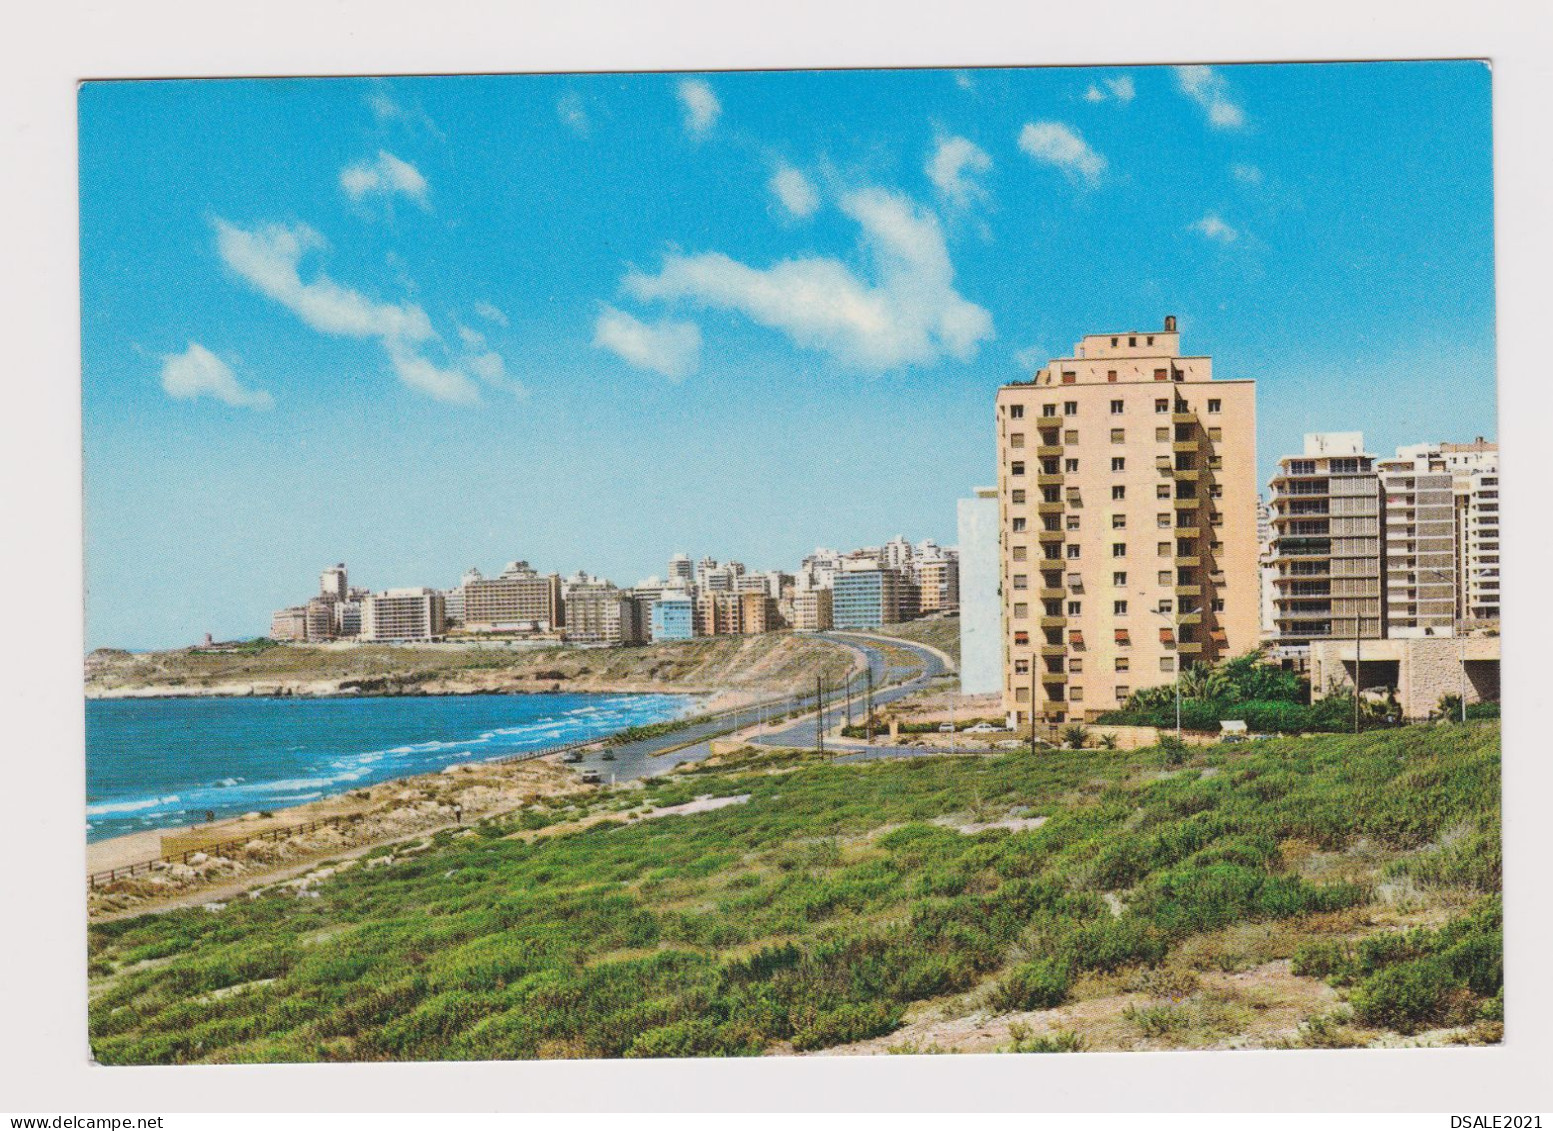 Lebanon Liban Raouche Quarter, New Buildings, View Vintage Photo Postcard RPPc AK (1295) - Libanon